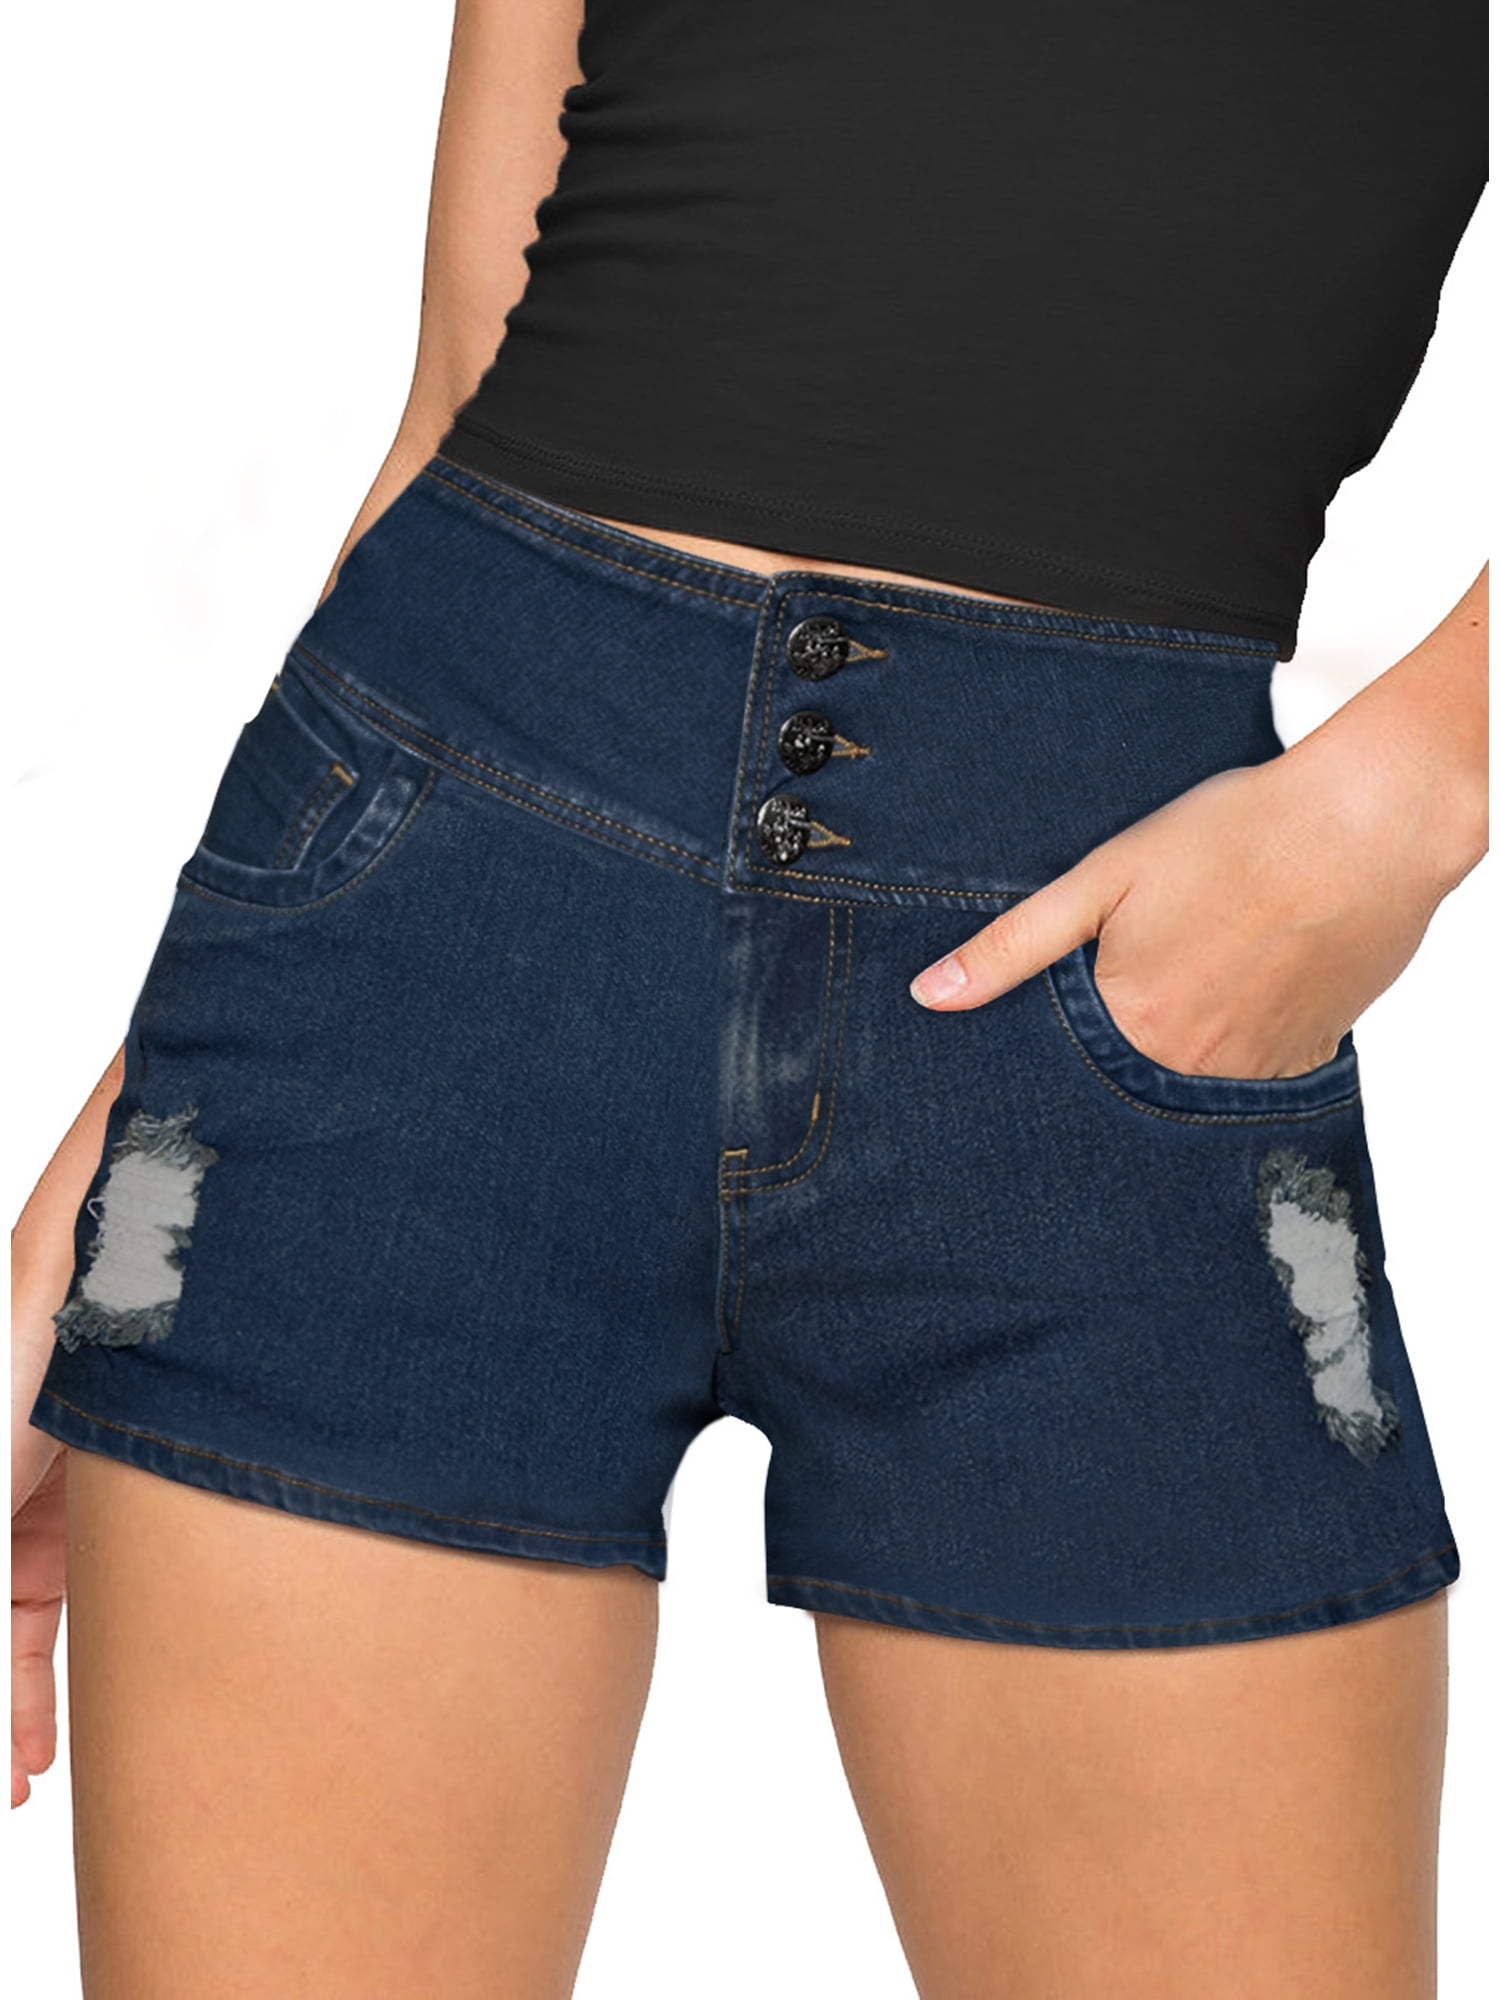 Women Butt Lift 3 Buttons High Wide Waist Stretch Denim Skinny Jeans 